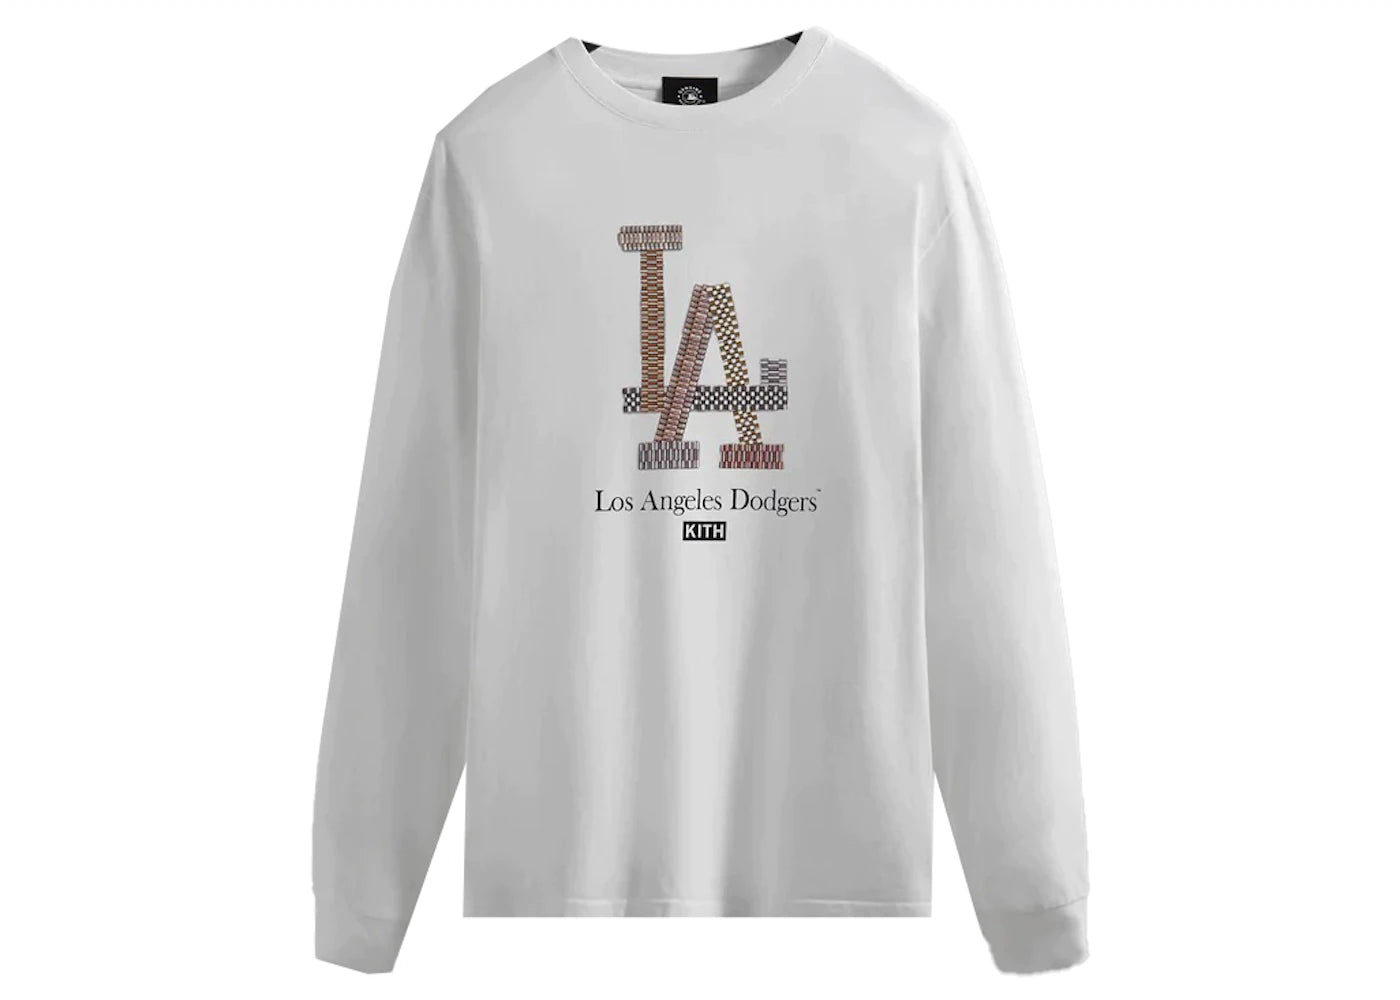 Dodgers Long Sleeve Shirt